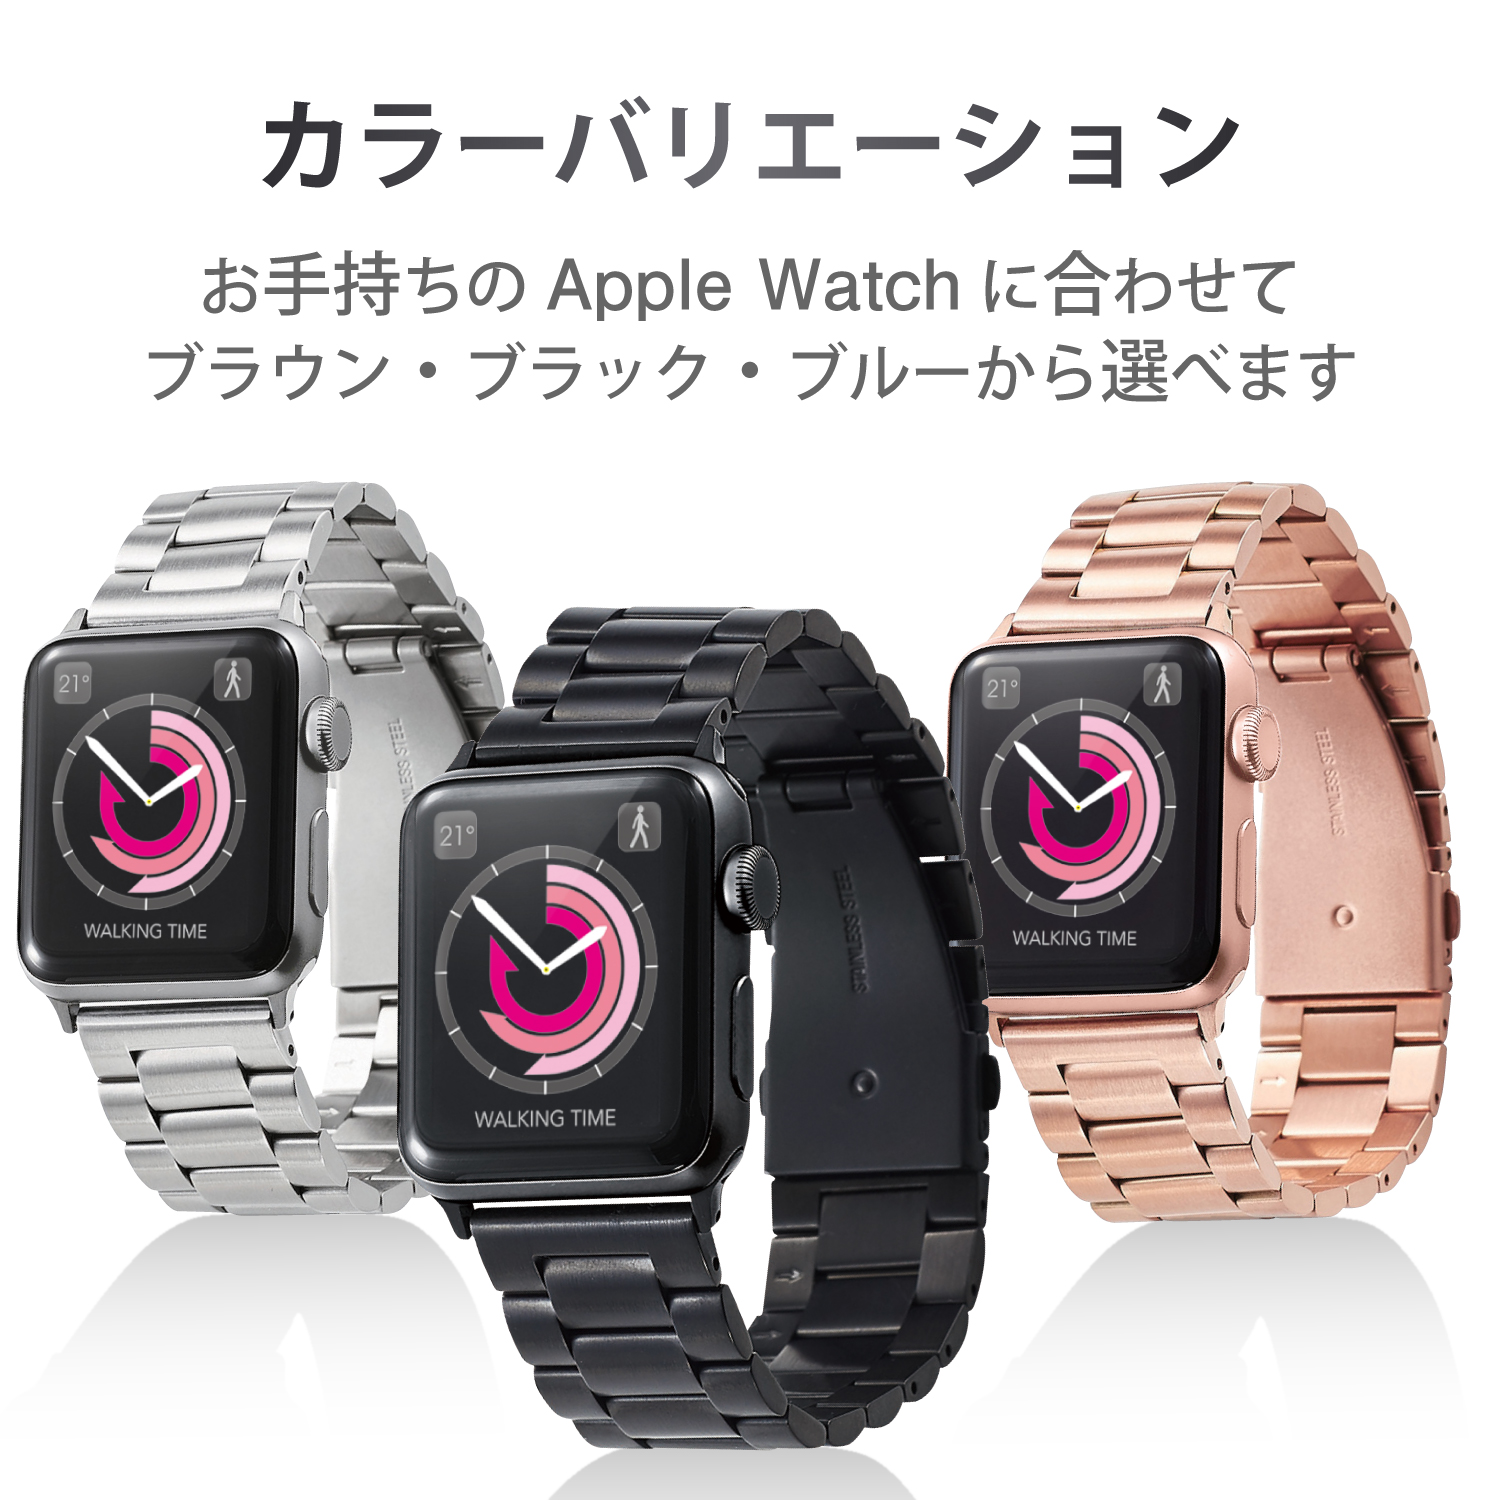 Apple Watch 42mm/ステンレスバンド/3連タイプ/ブラック AW-42BDSS3BK｜パソコン・スマートフォン・デジタル機器販売のPC  DEPOT(ピーシーデポ)WEBSHOP